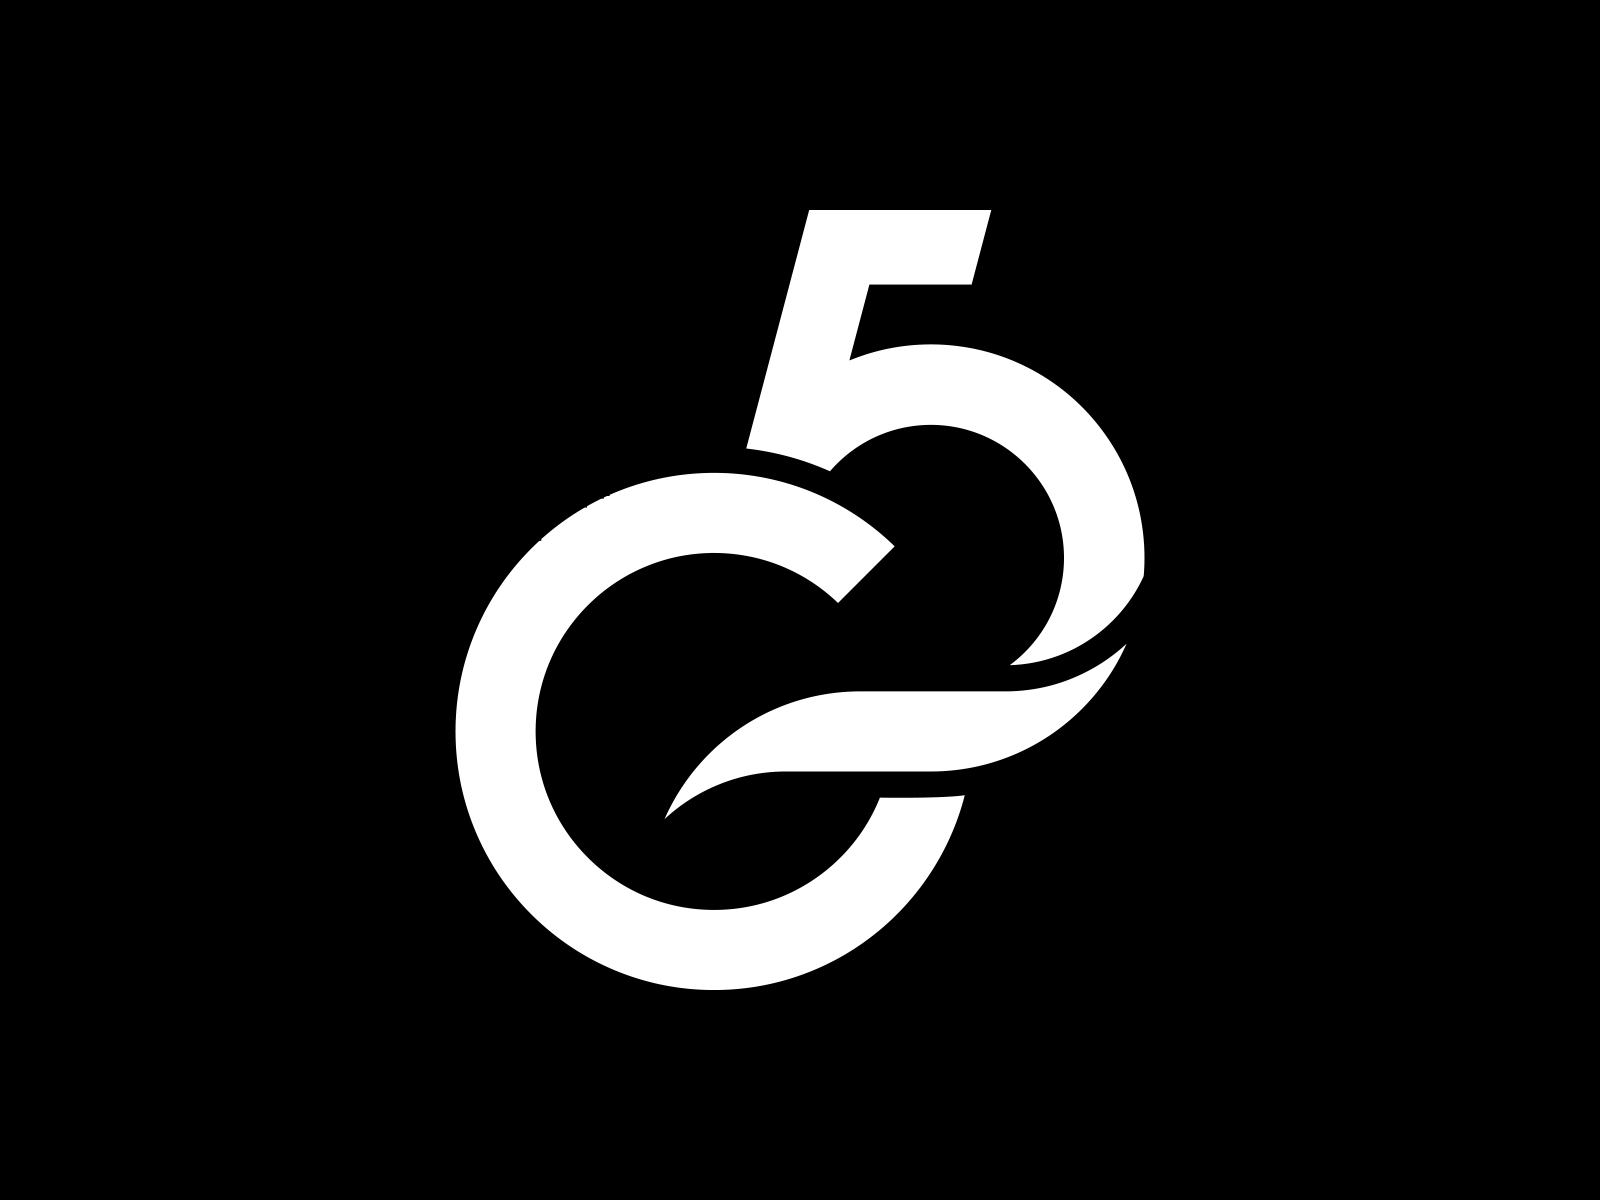 G5 Monogram Logo Mark Design by Murat Bo on Dribbble